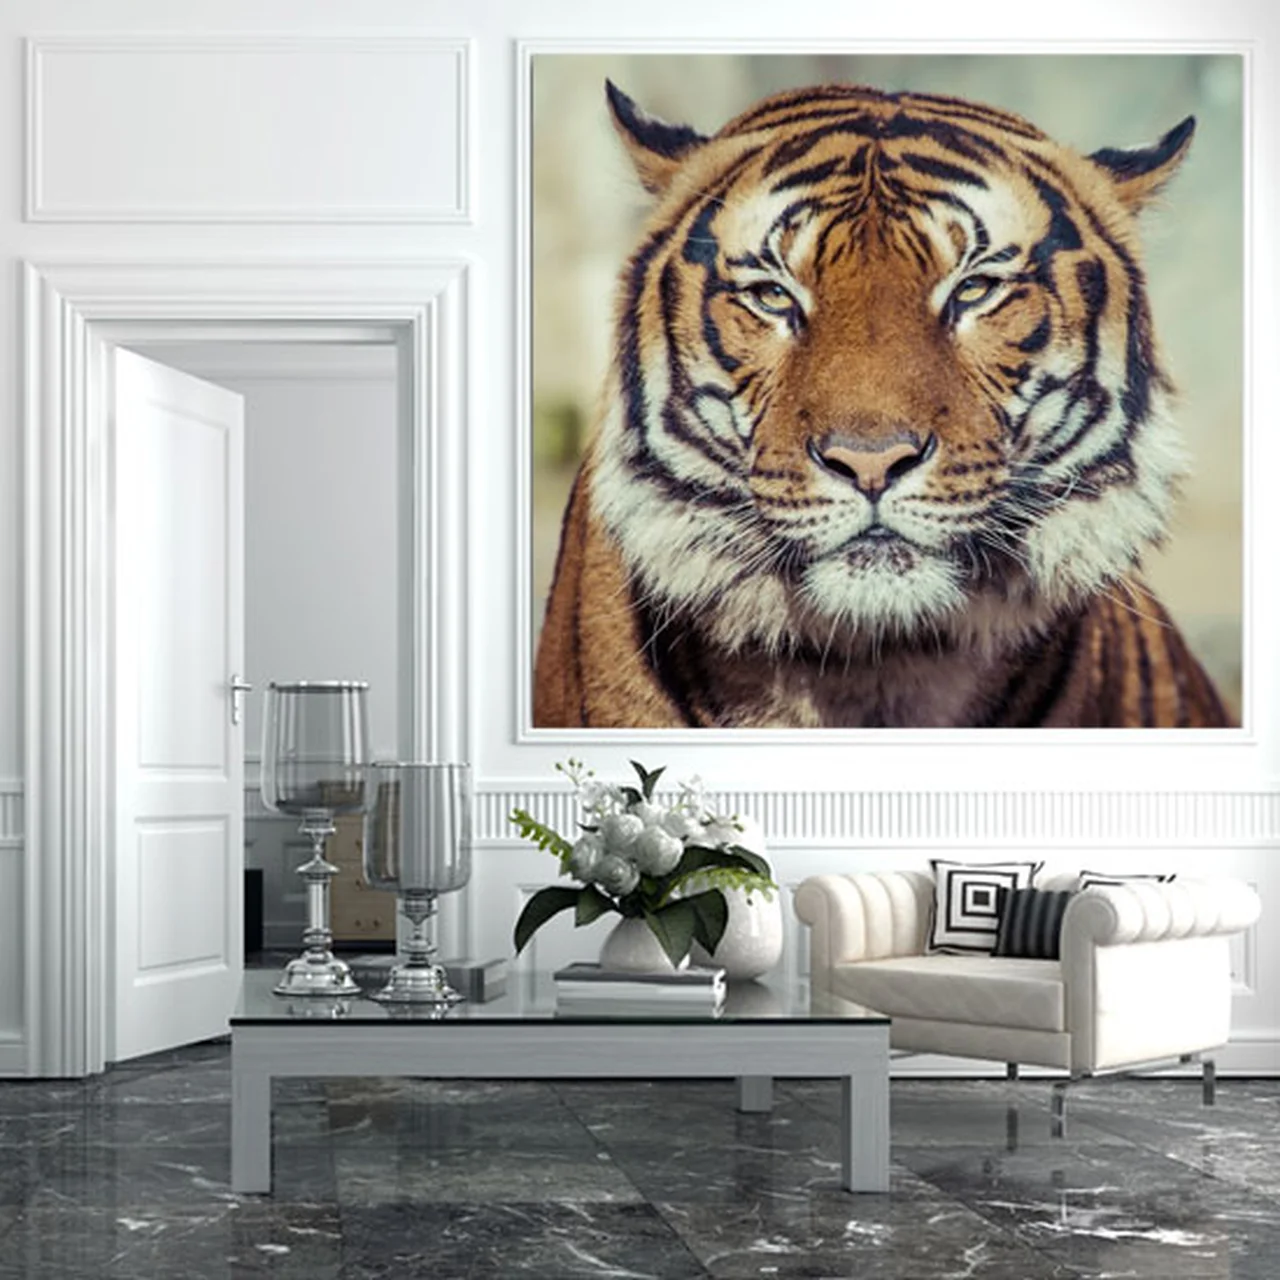 Dekoracja, której motyw stanowi tygrys imponujący swoją majestatyczną postawą.